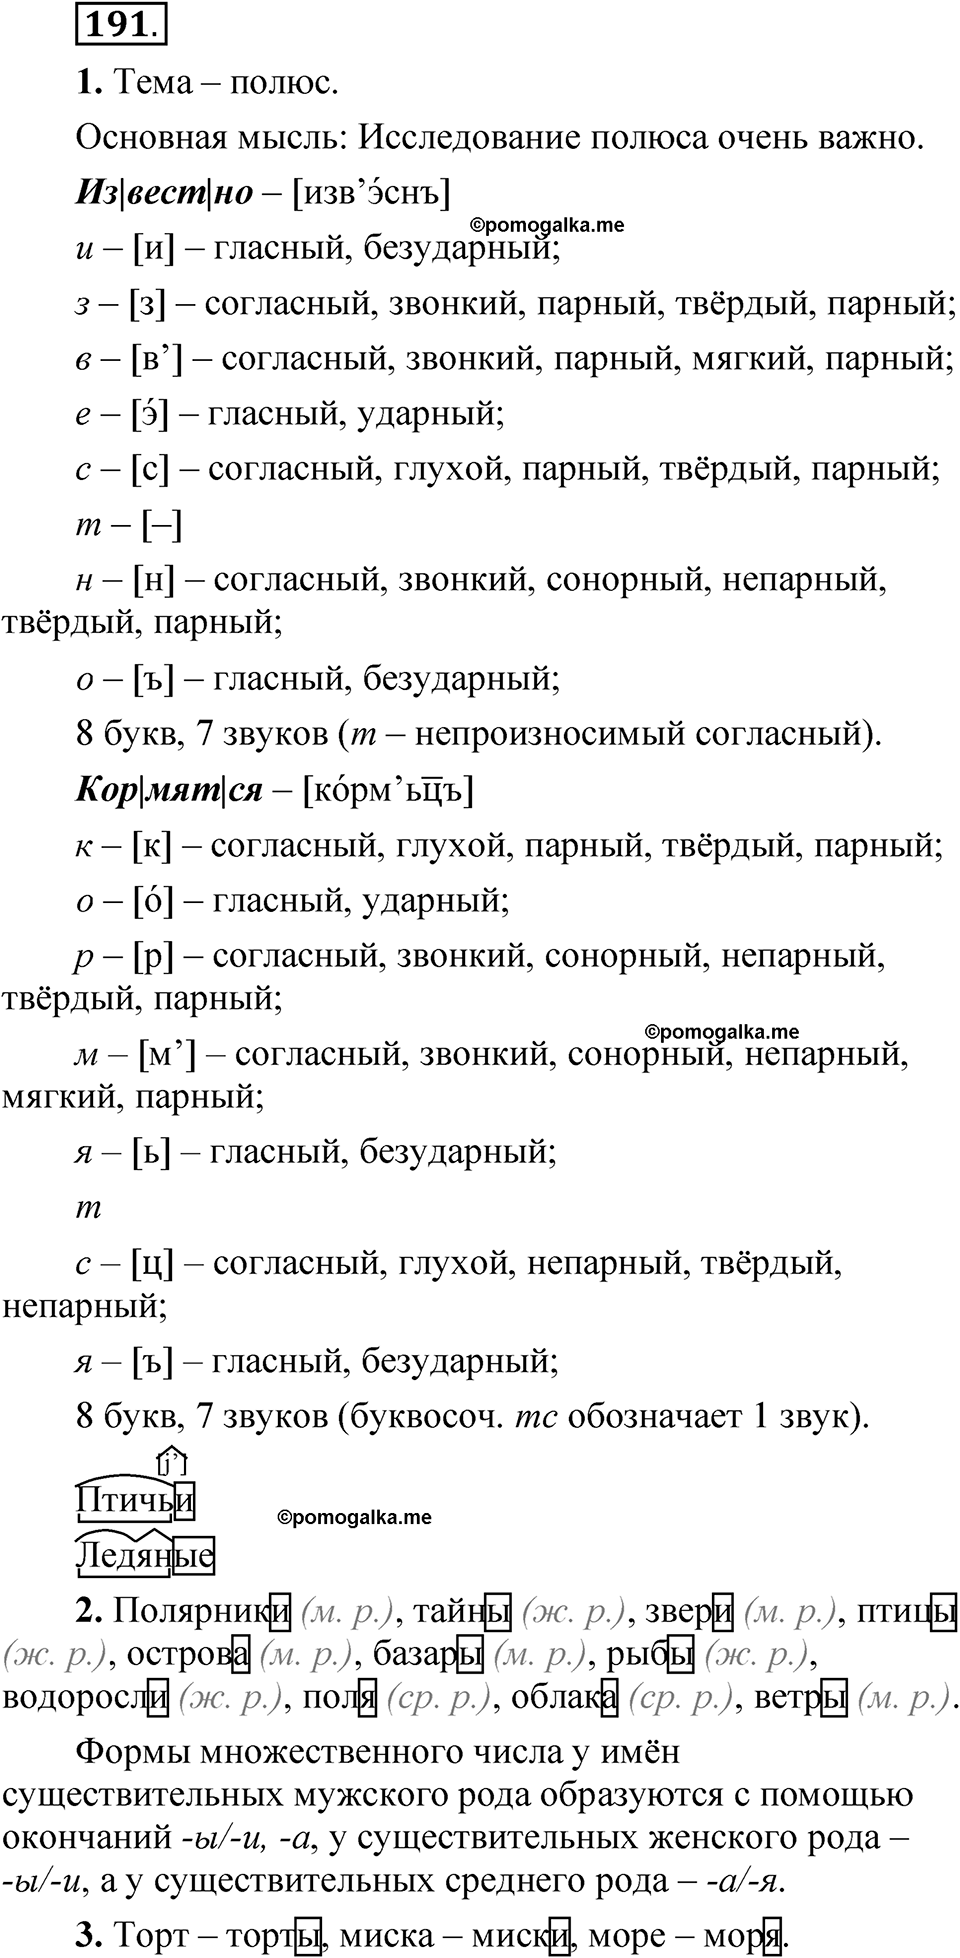 страница 133 упражнение 191 русский язык 5 класс Быстрова, Кибирева 2 часть 2021 год